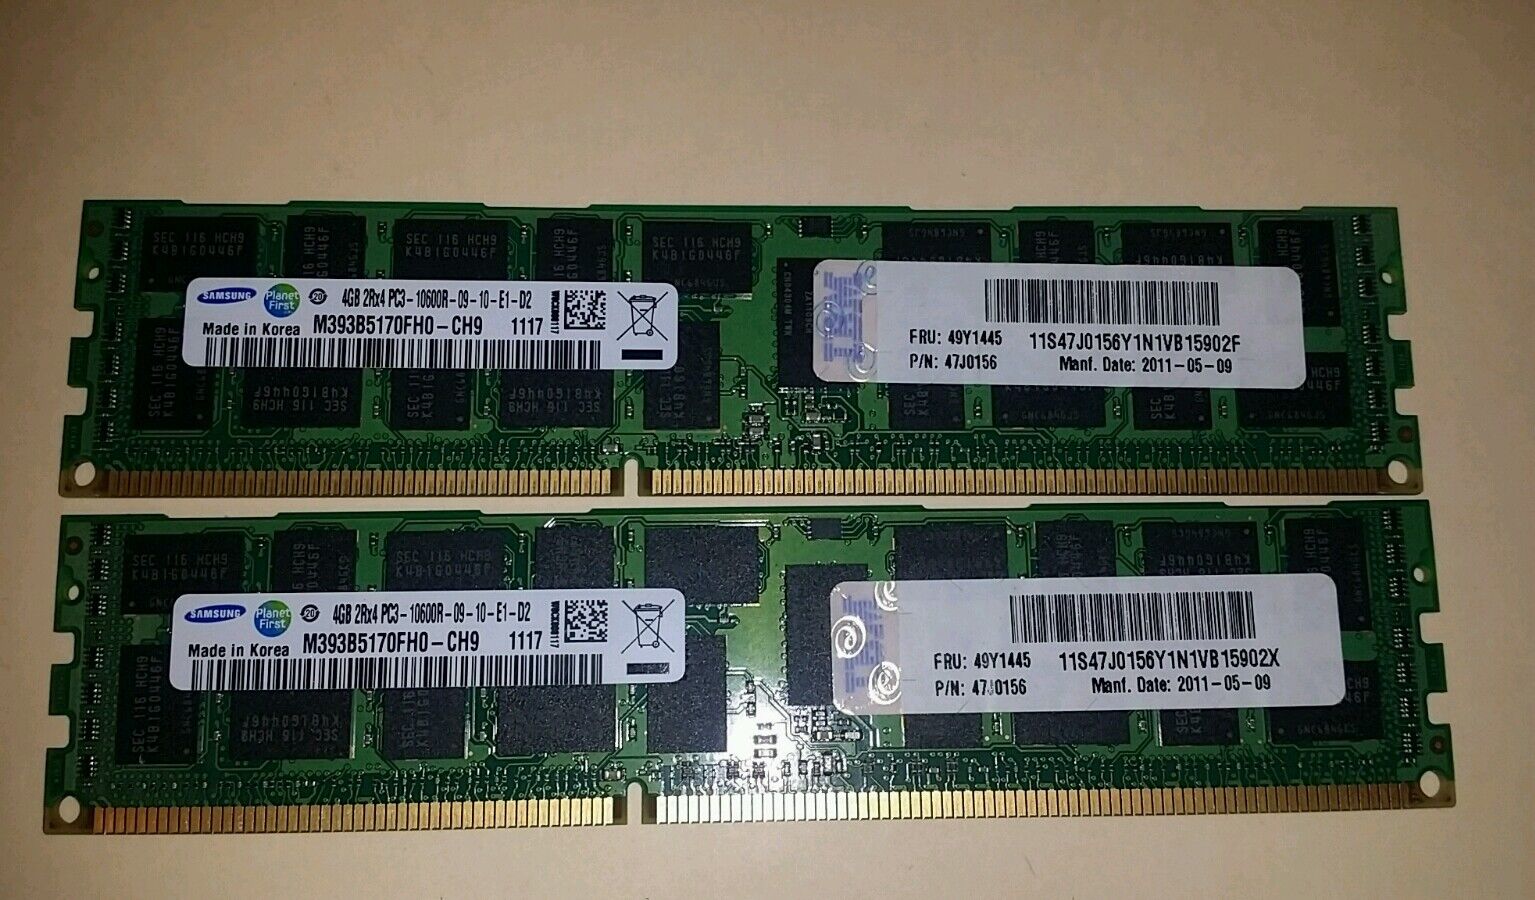  2 X 4GB IBM 49Y1445 Samsung M393B5170FH0-CH9 2Rx4 PC3-10600R REG Memory @ 